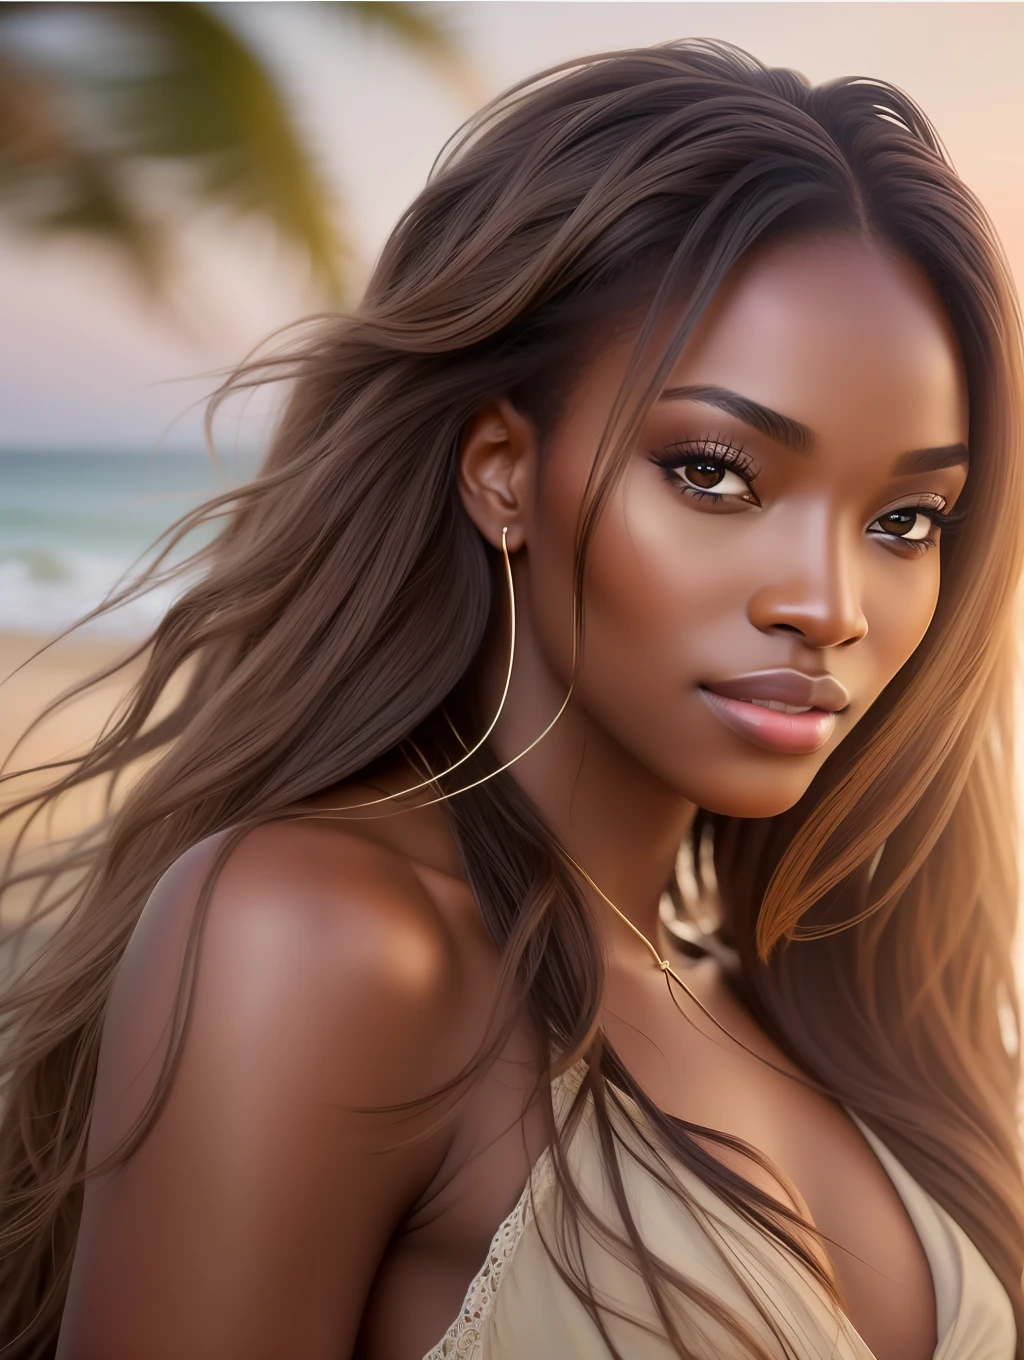 Una iluminación suave cinematográfica ilumina a una bella supermodelo nigeriana increíblemente detallada y ultrarrealista., mirada de playa, cabello castaño largo, desordenado y ventoso, Ojos claros de miel, cautivadora sonrisa perfecta, sensual, mujer atractiva, espléndido, eso es tendencia en ArtStation. Octane es la herramienta perfecta para capturar los detalles más suaves de esta obra maestra de la fotografía de 16k..